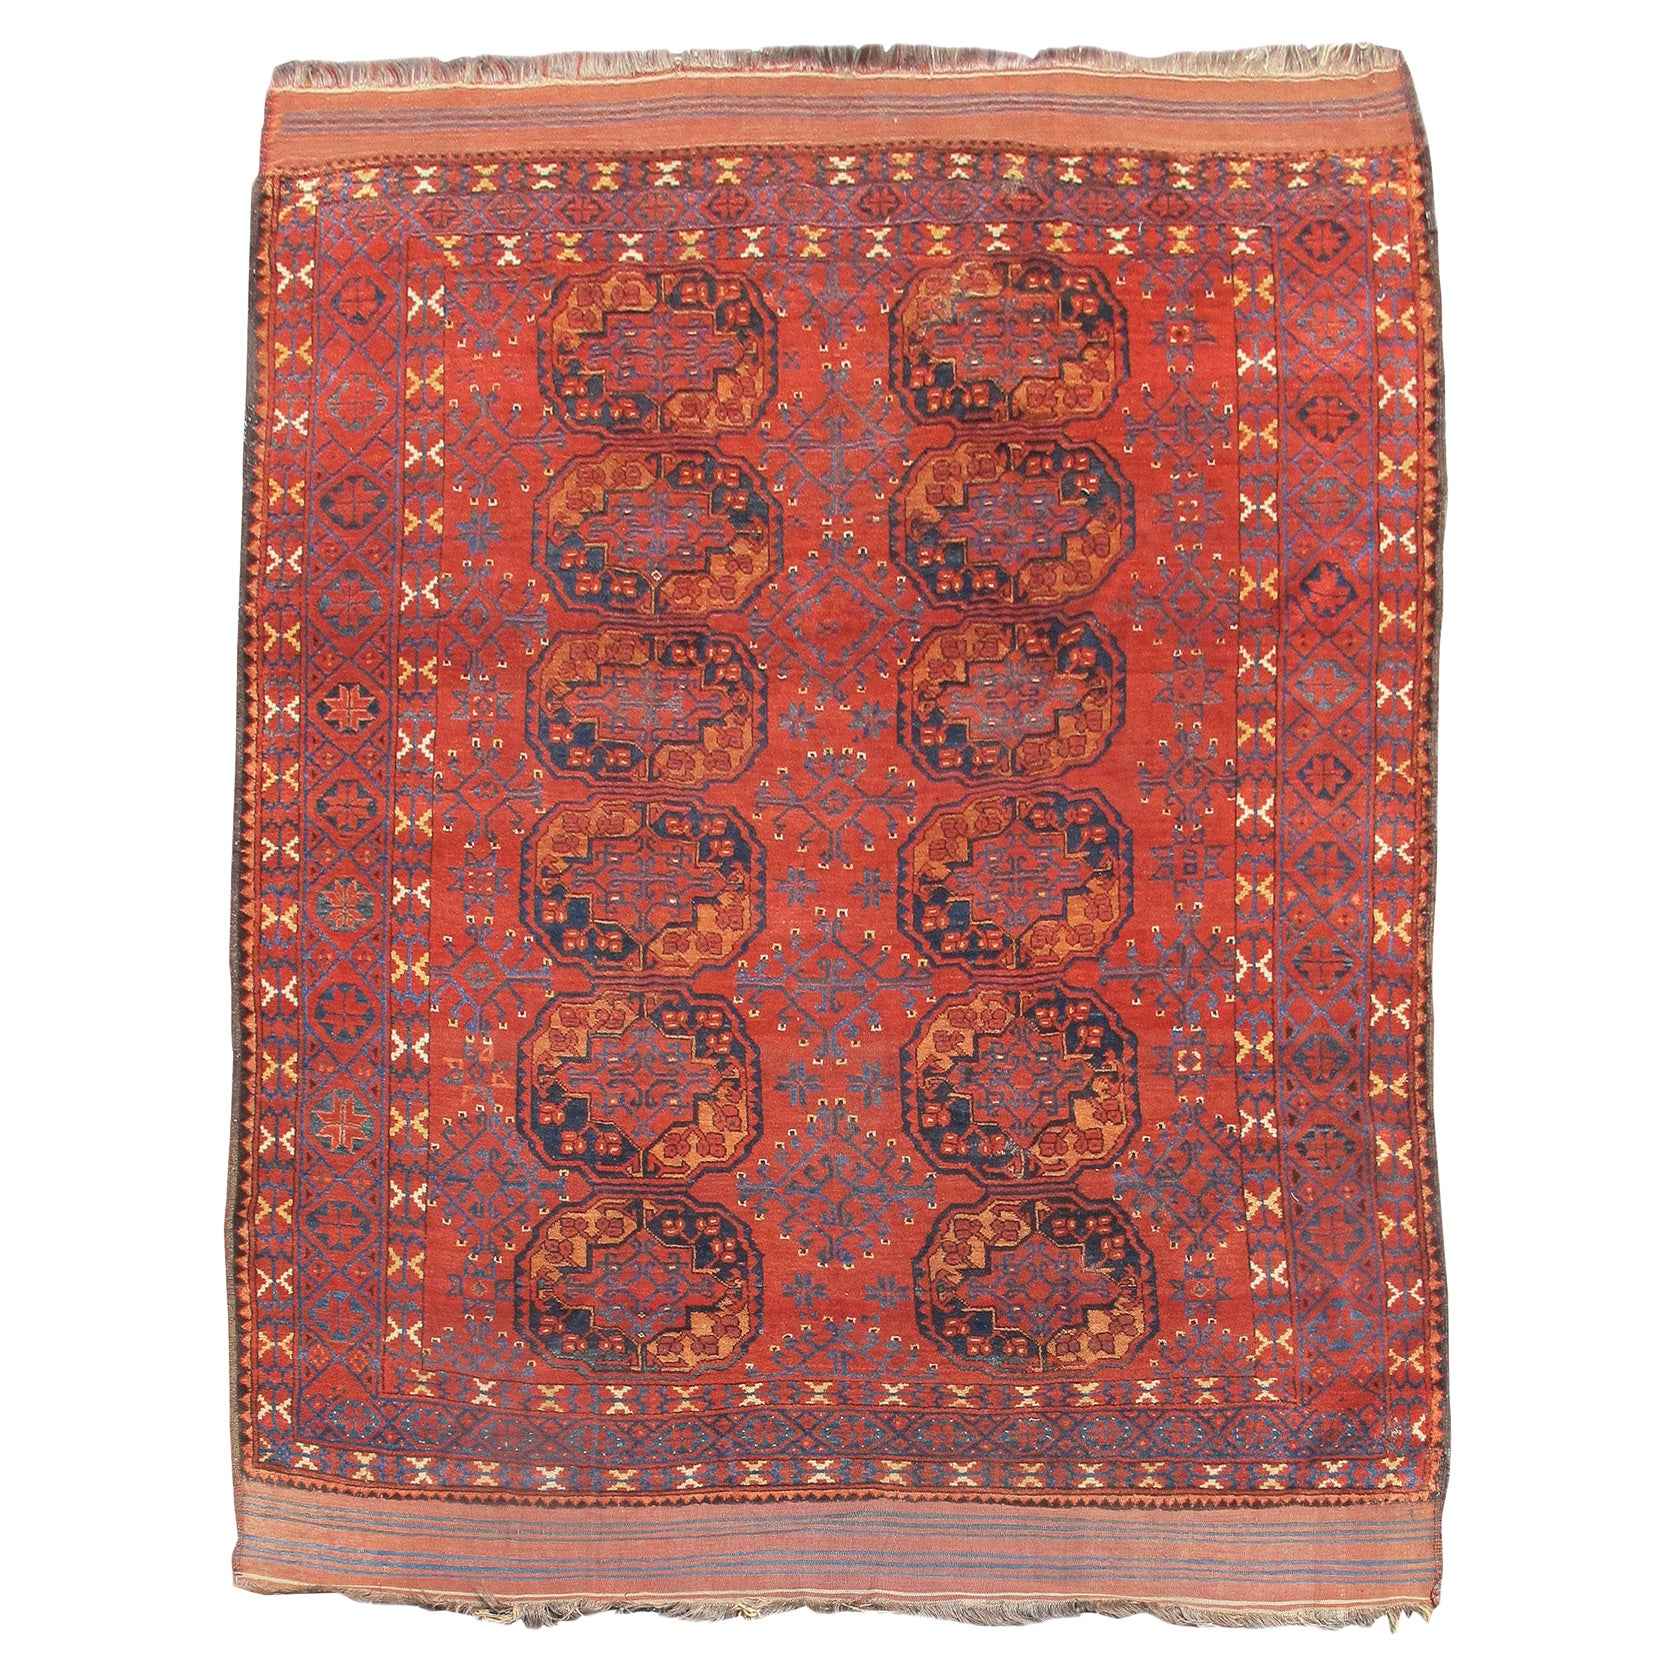 Ersari Main Carpet, 19th century